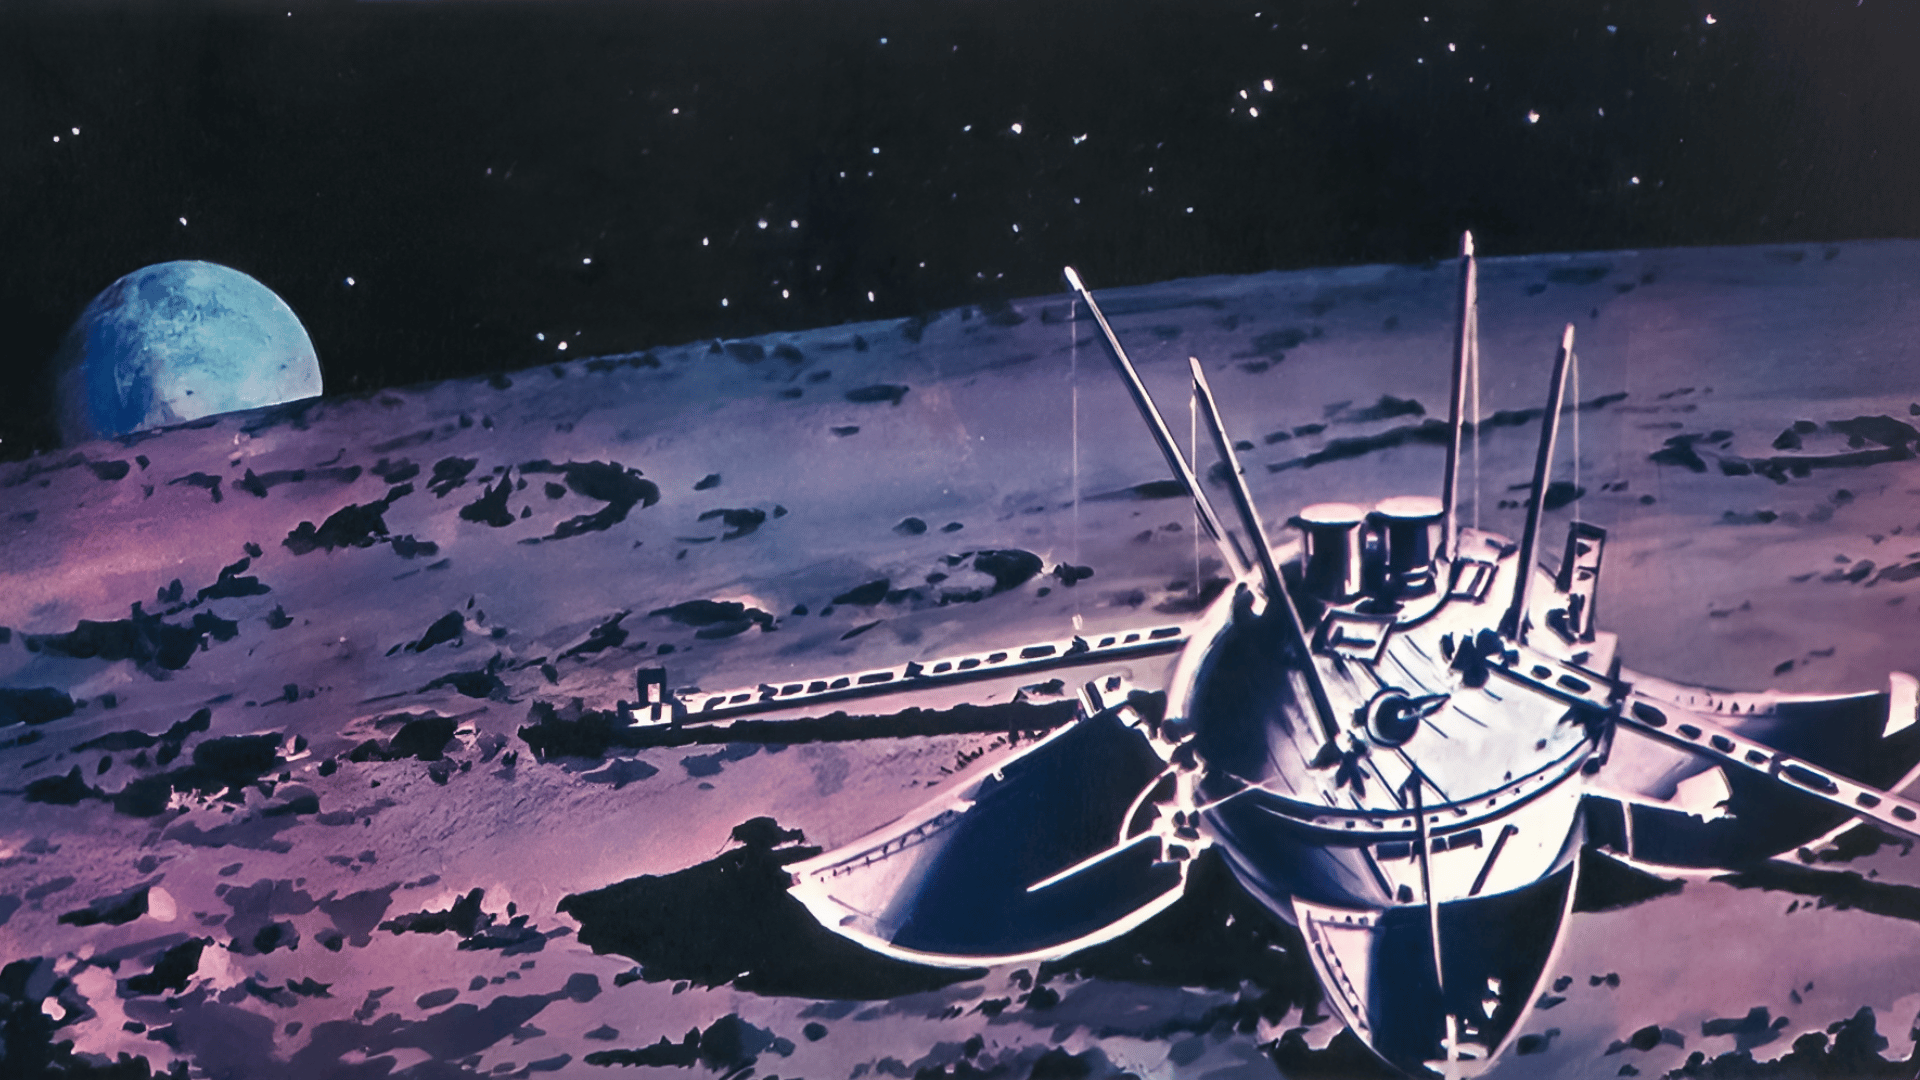 Луна-9 автоматическая межпланетная станция. Советская АМС «Луна - 9». 1966 — СССР осуществил успешный запуск межпланетной станции «Луна-13».. Станция Луна-9 1966 года.